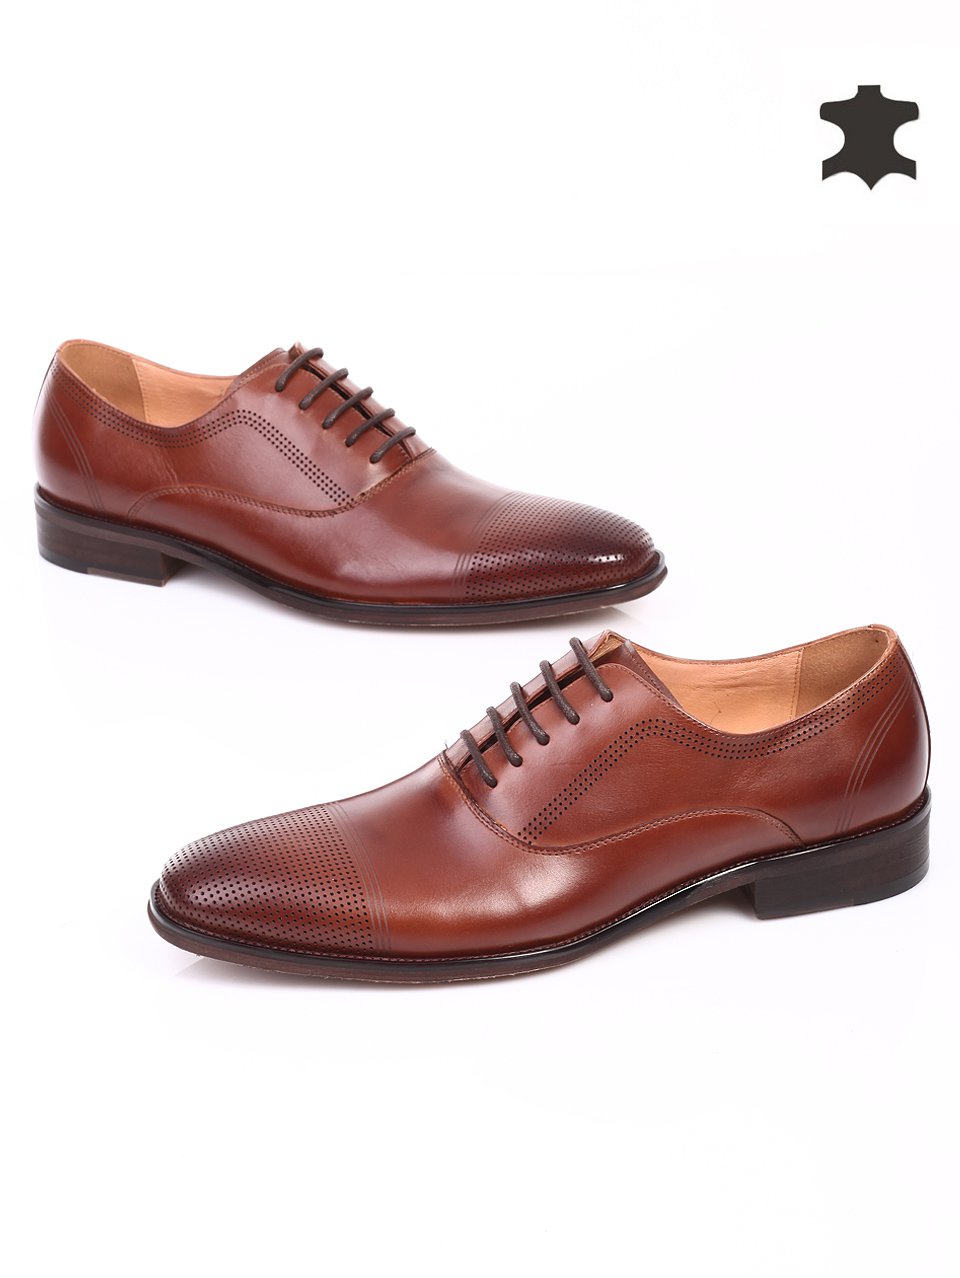 Елегантни мъжки обувки от естествена кожа 7N-15224 brown